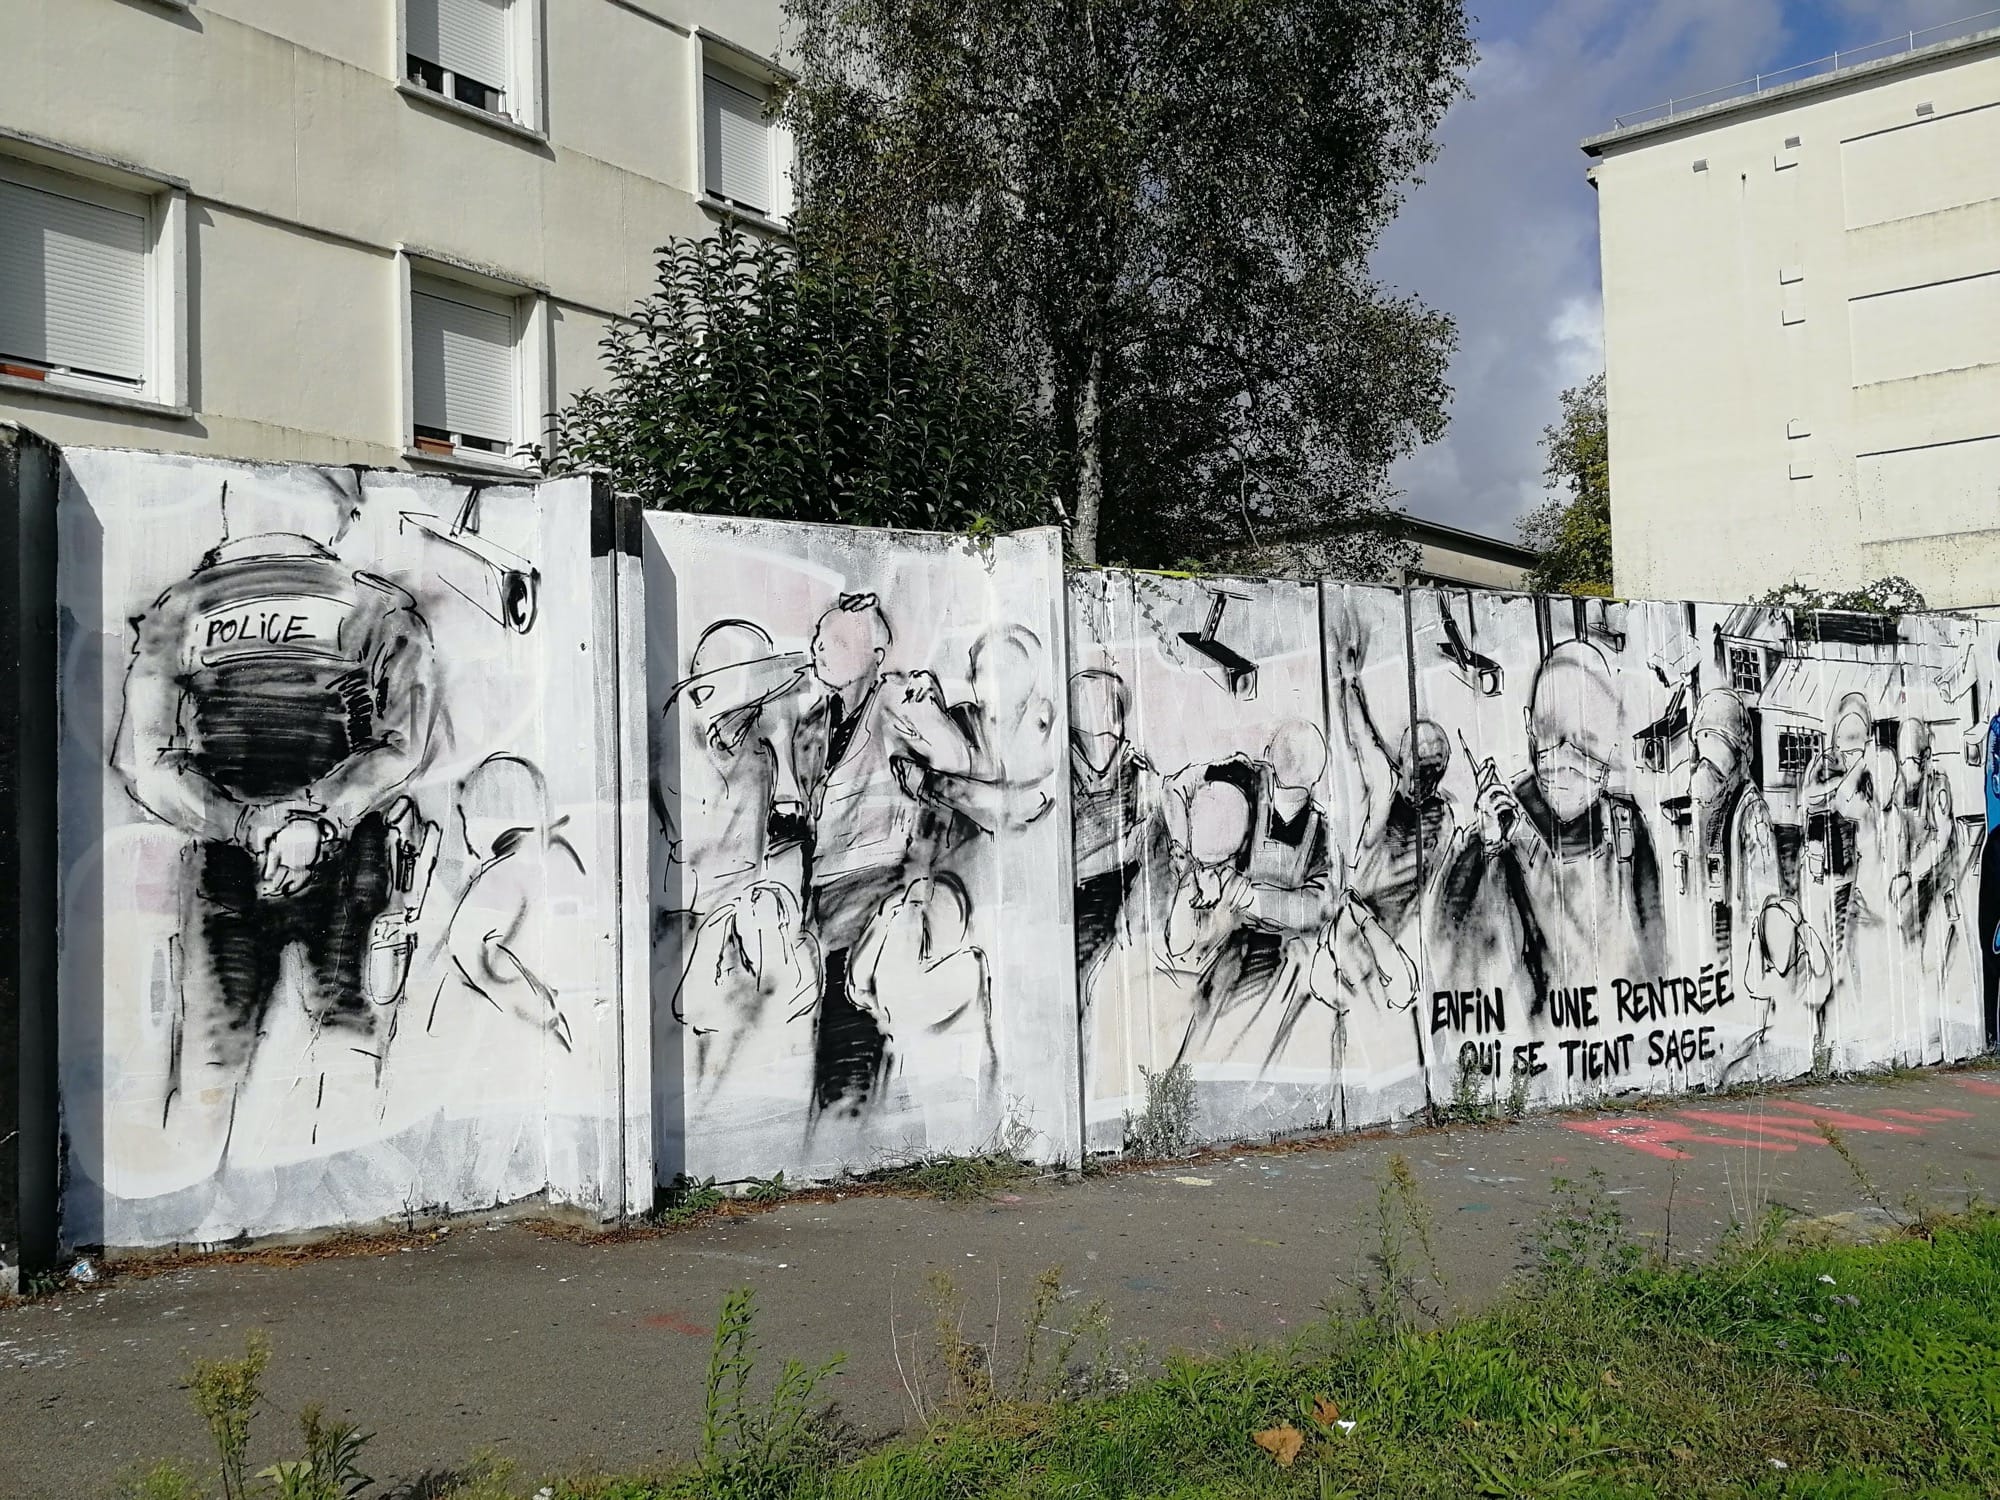 Graffiti 4486 Enfin une rentrée qui se tient sage captured by Rabot in Nantes France